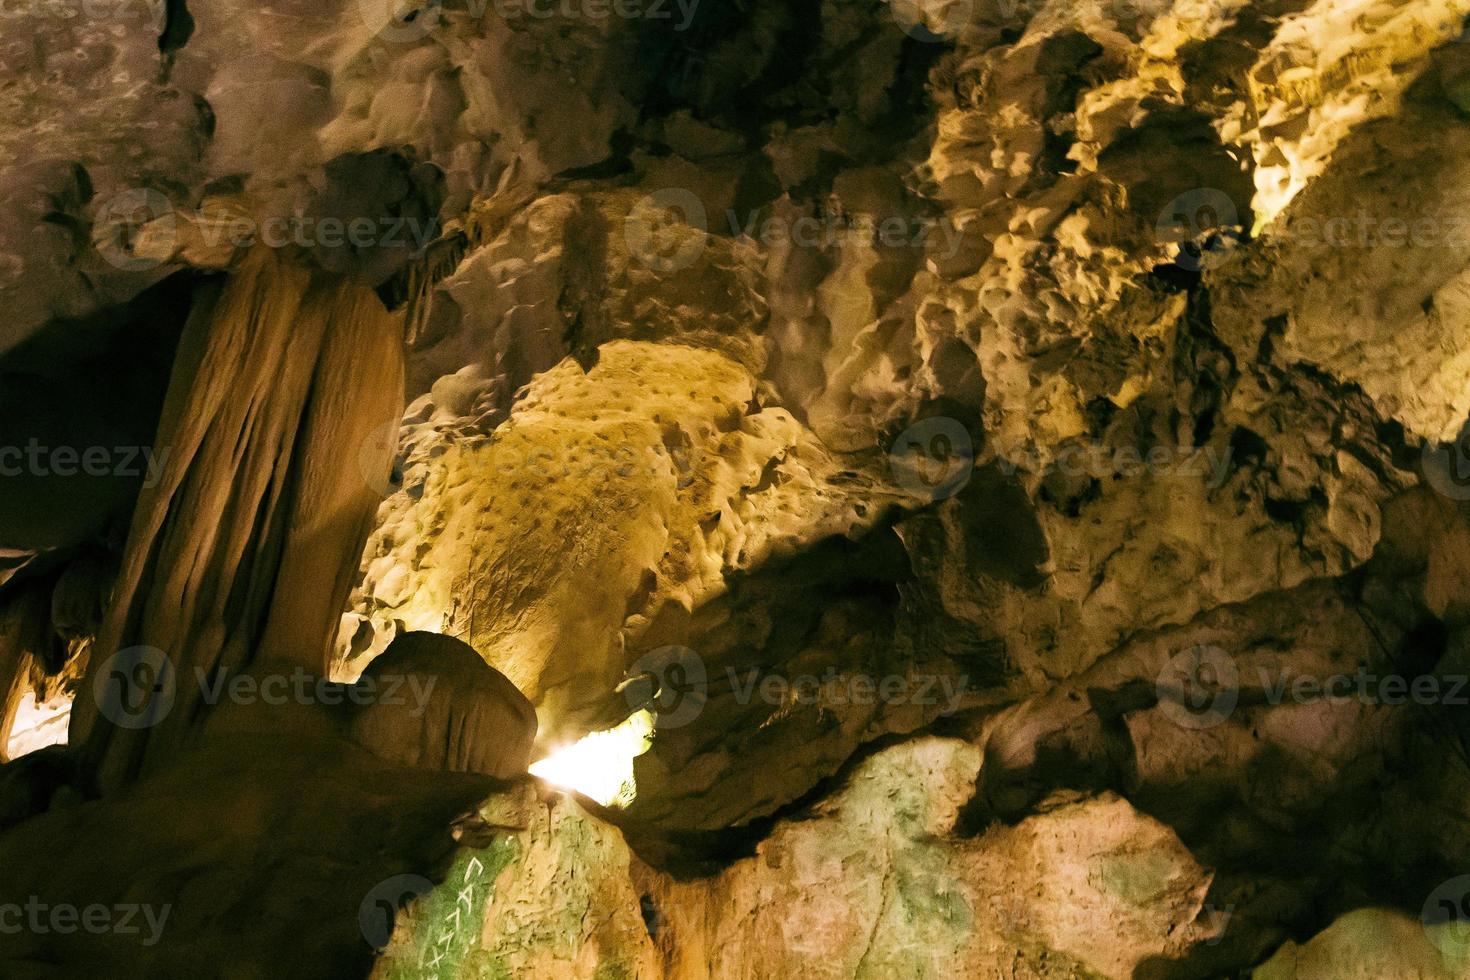 grotte souterraine sombre et naturelle avec des stalactites aux formes étranges. photo